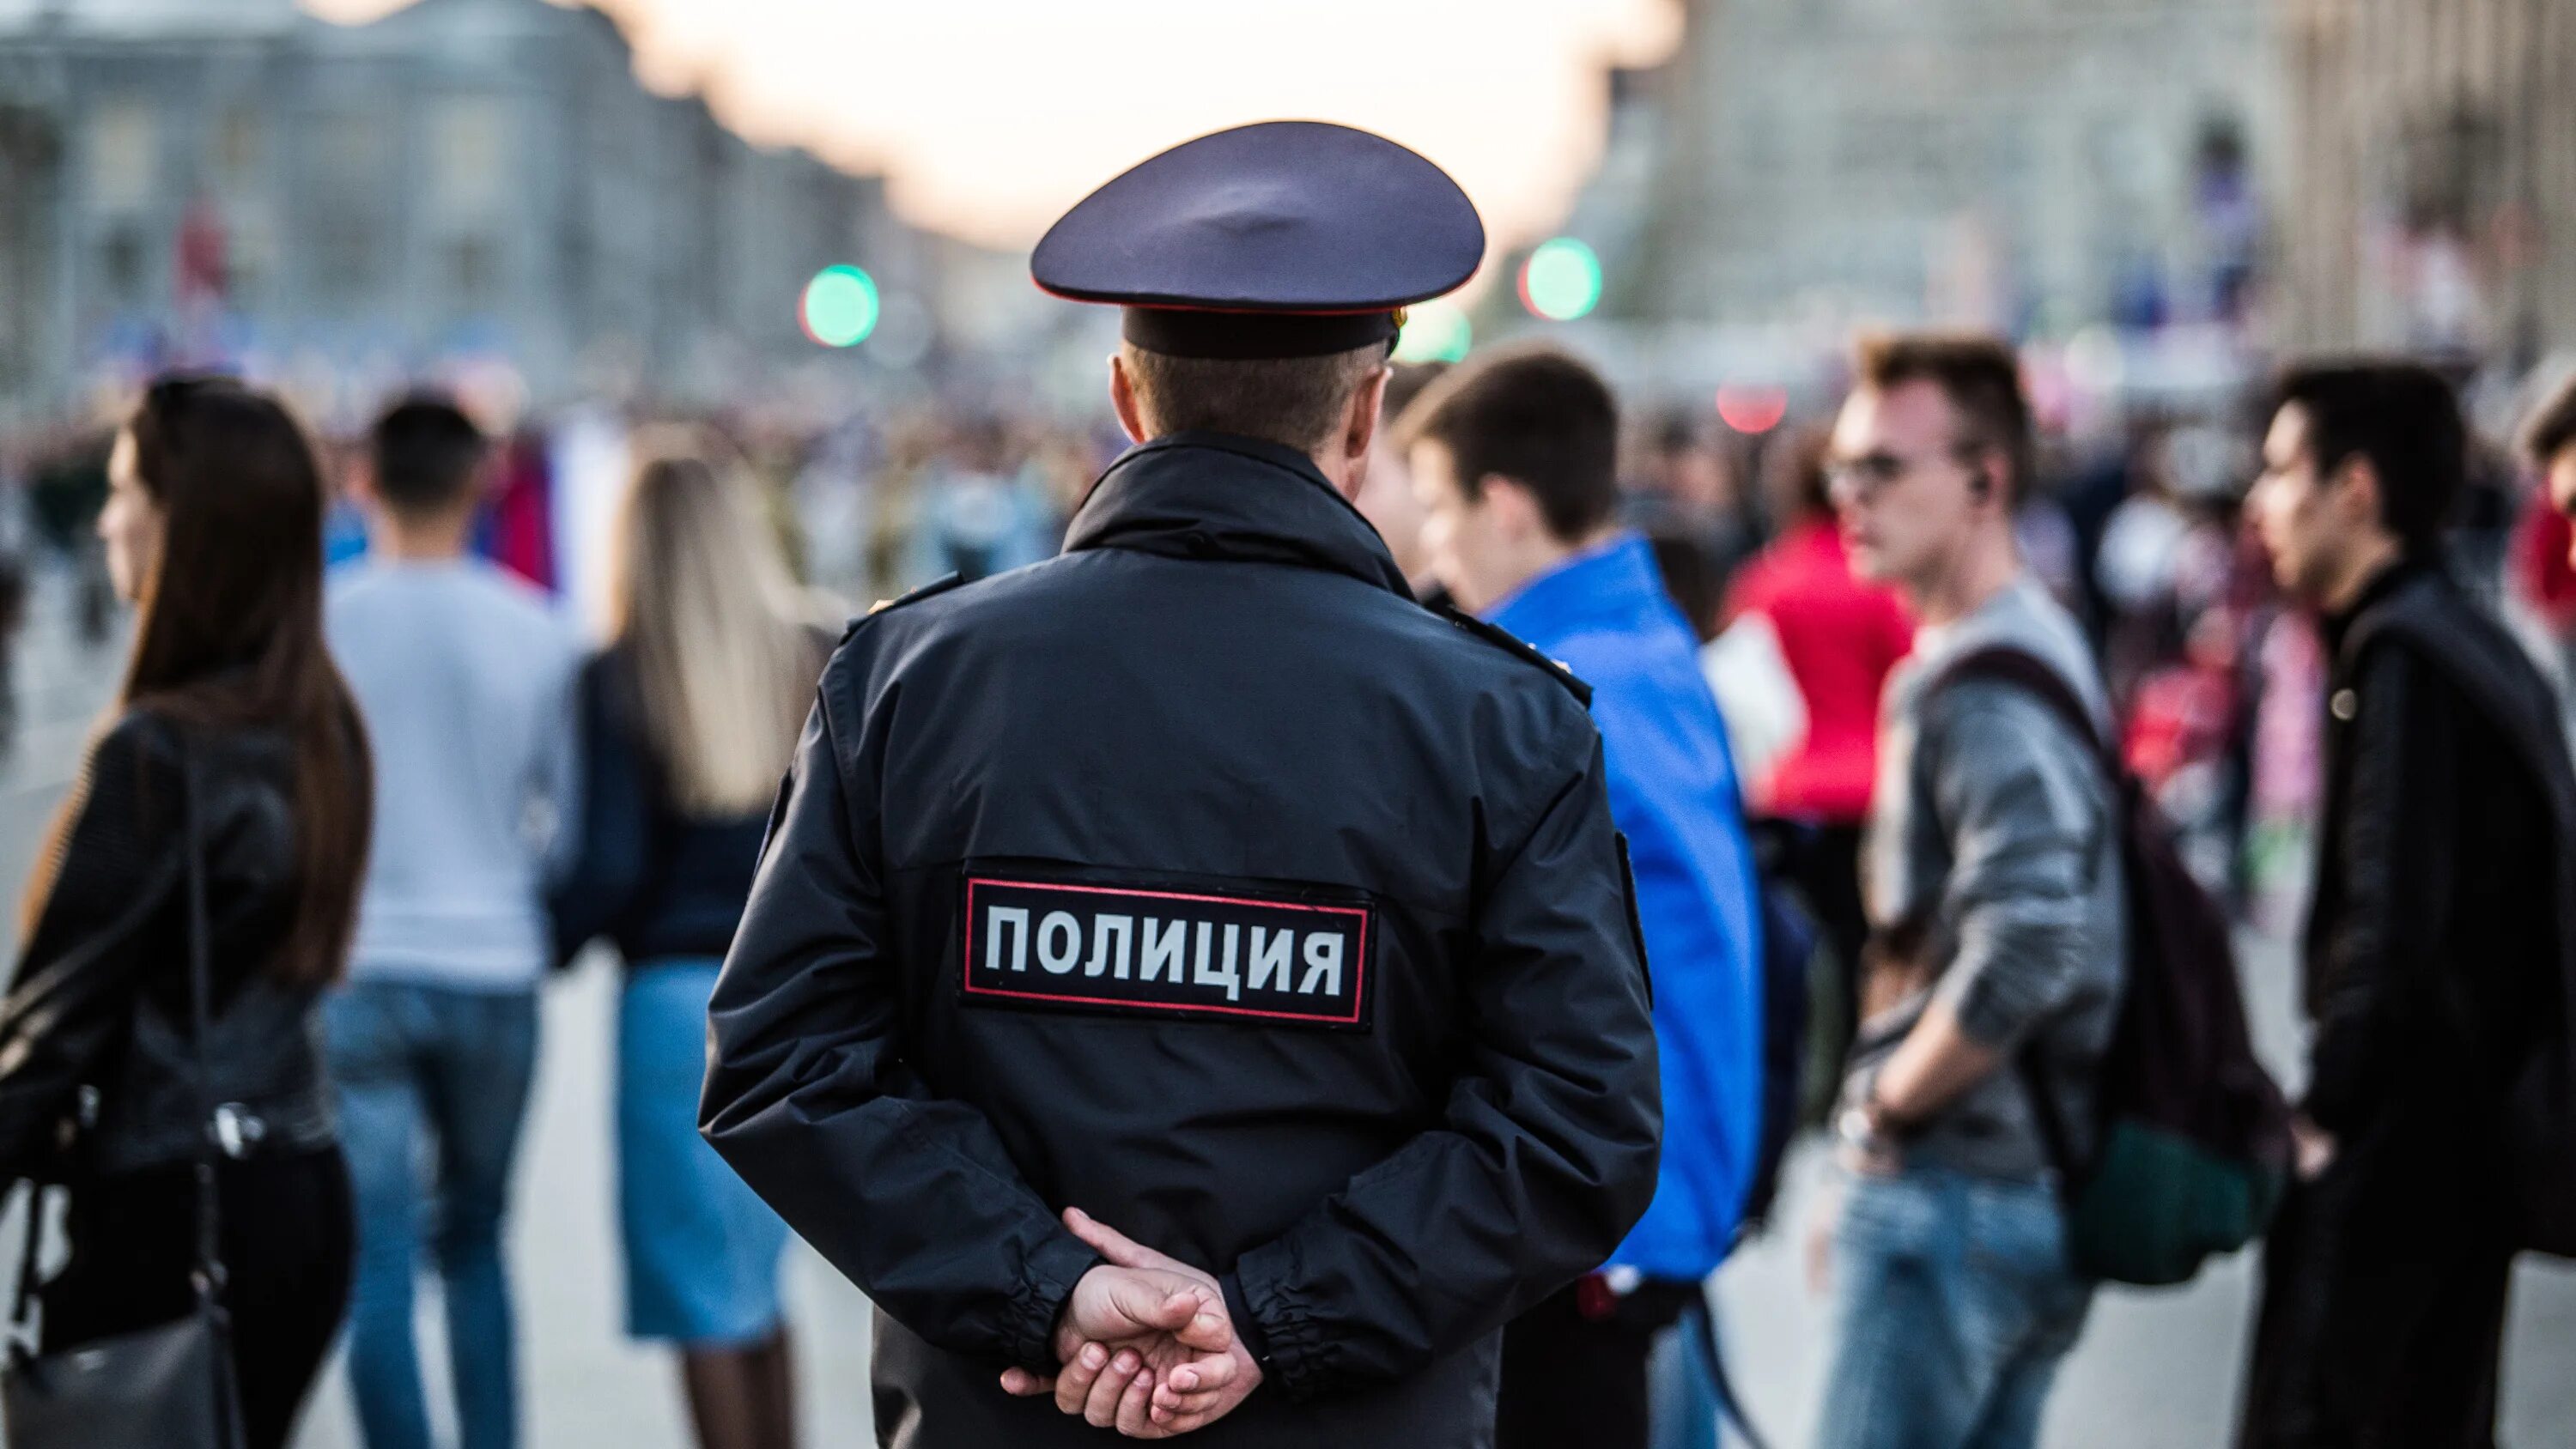 Полиция Новосибирск. Превышение полномочий полиции. Фото полицейского. Превышение полномочий комментарий